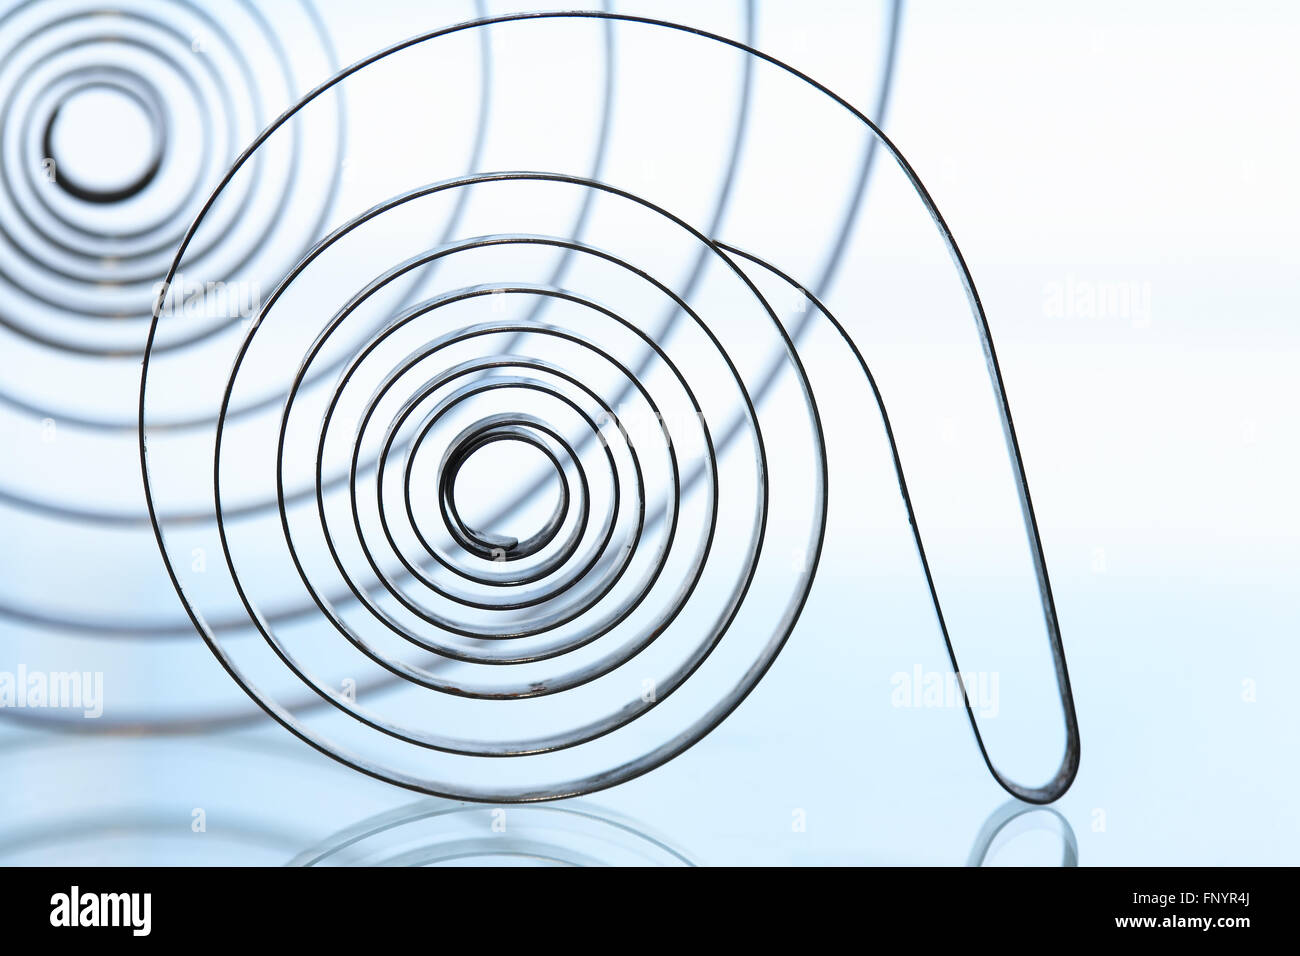 Contexte industriel. Closeup of old metal spirales avec réflexion Banque D'Images